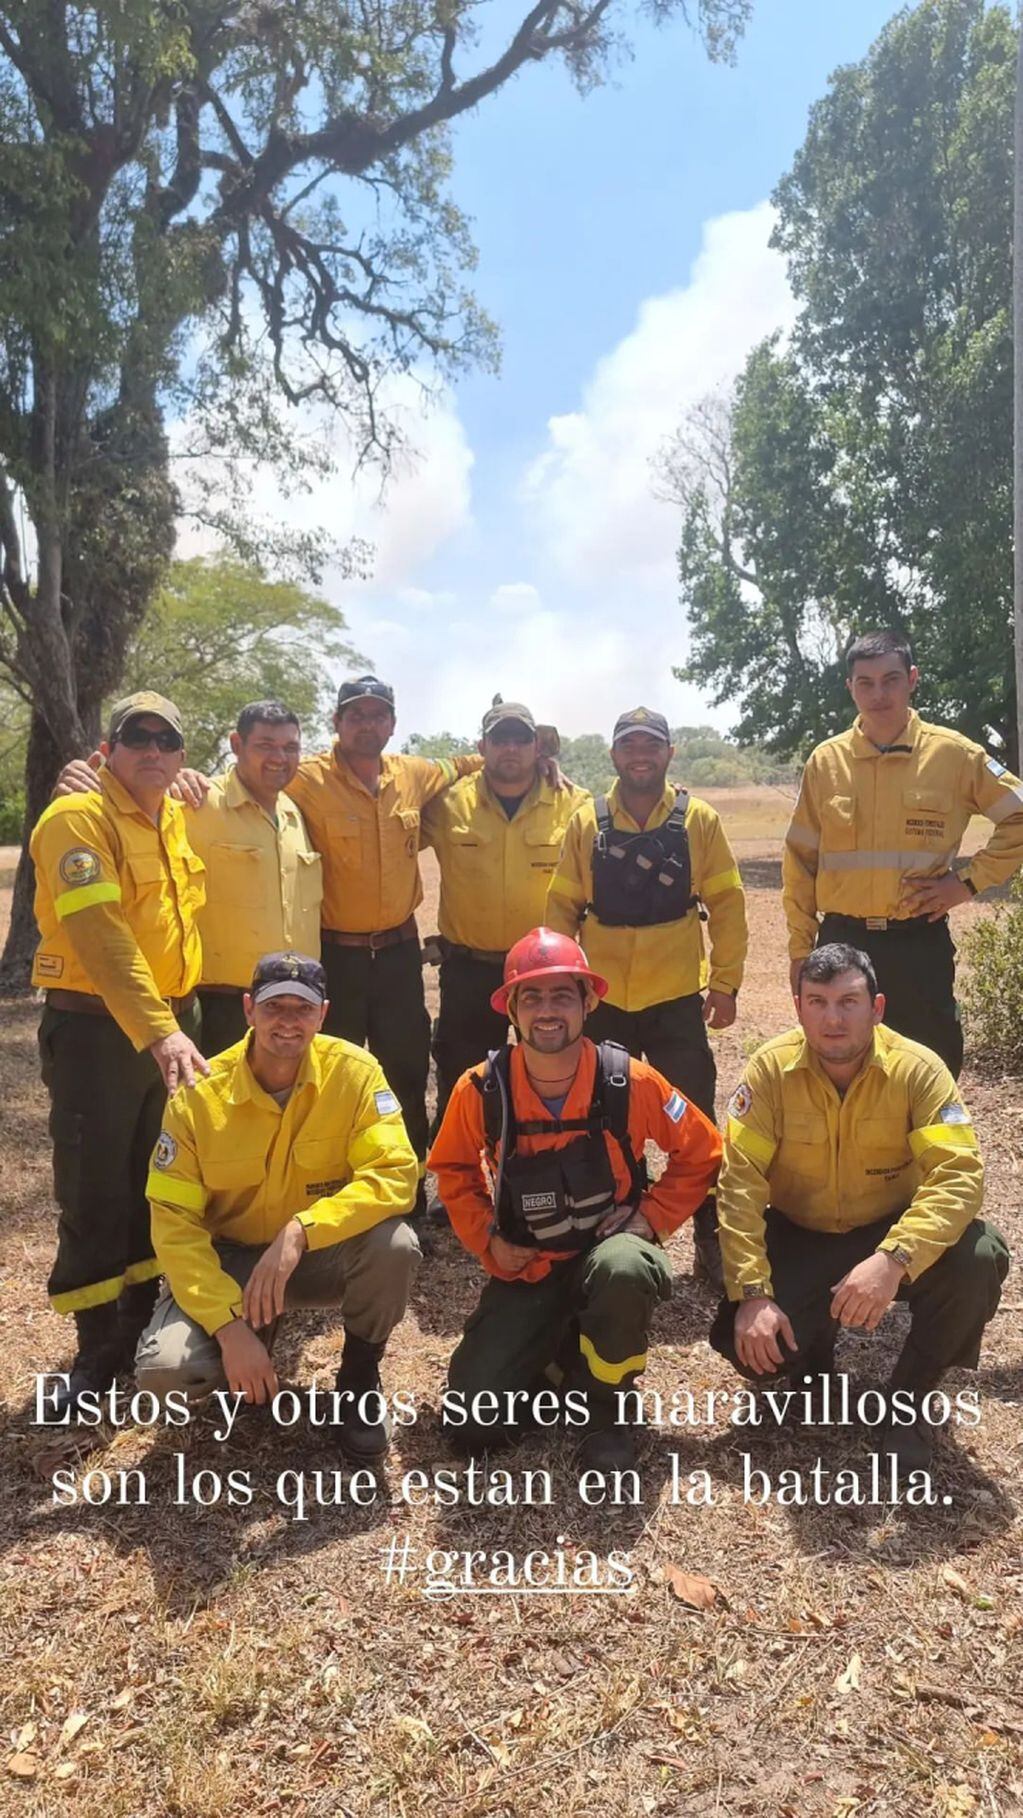 La actriz Juana Viale agradeció en su cuenta de Instagram a los bomberos voluntarios que luchan contra el fuego en Corrientes.